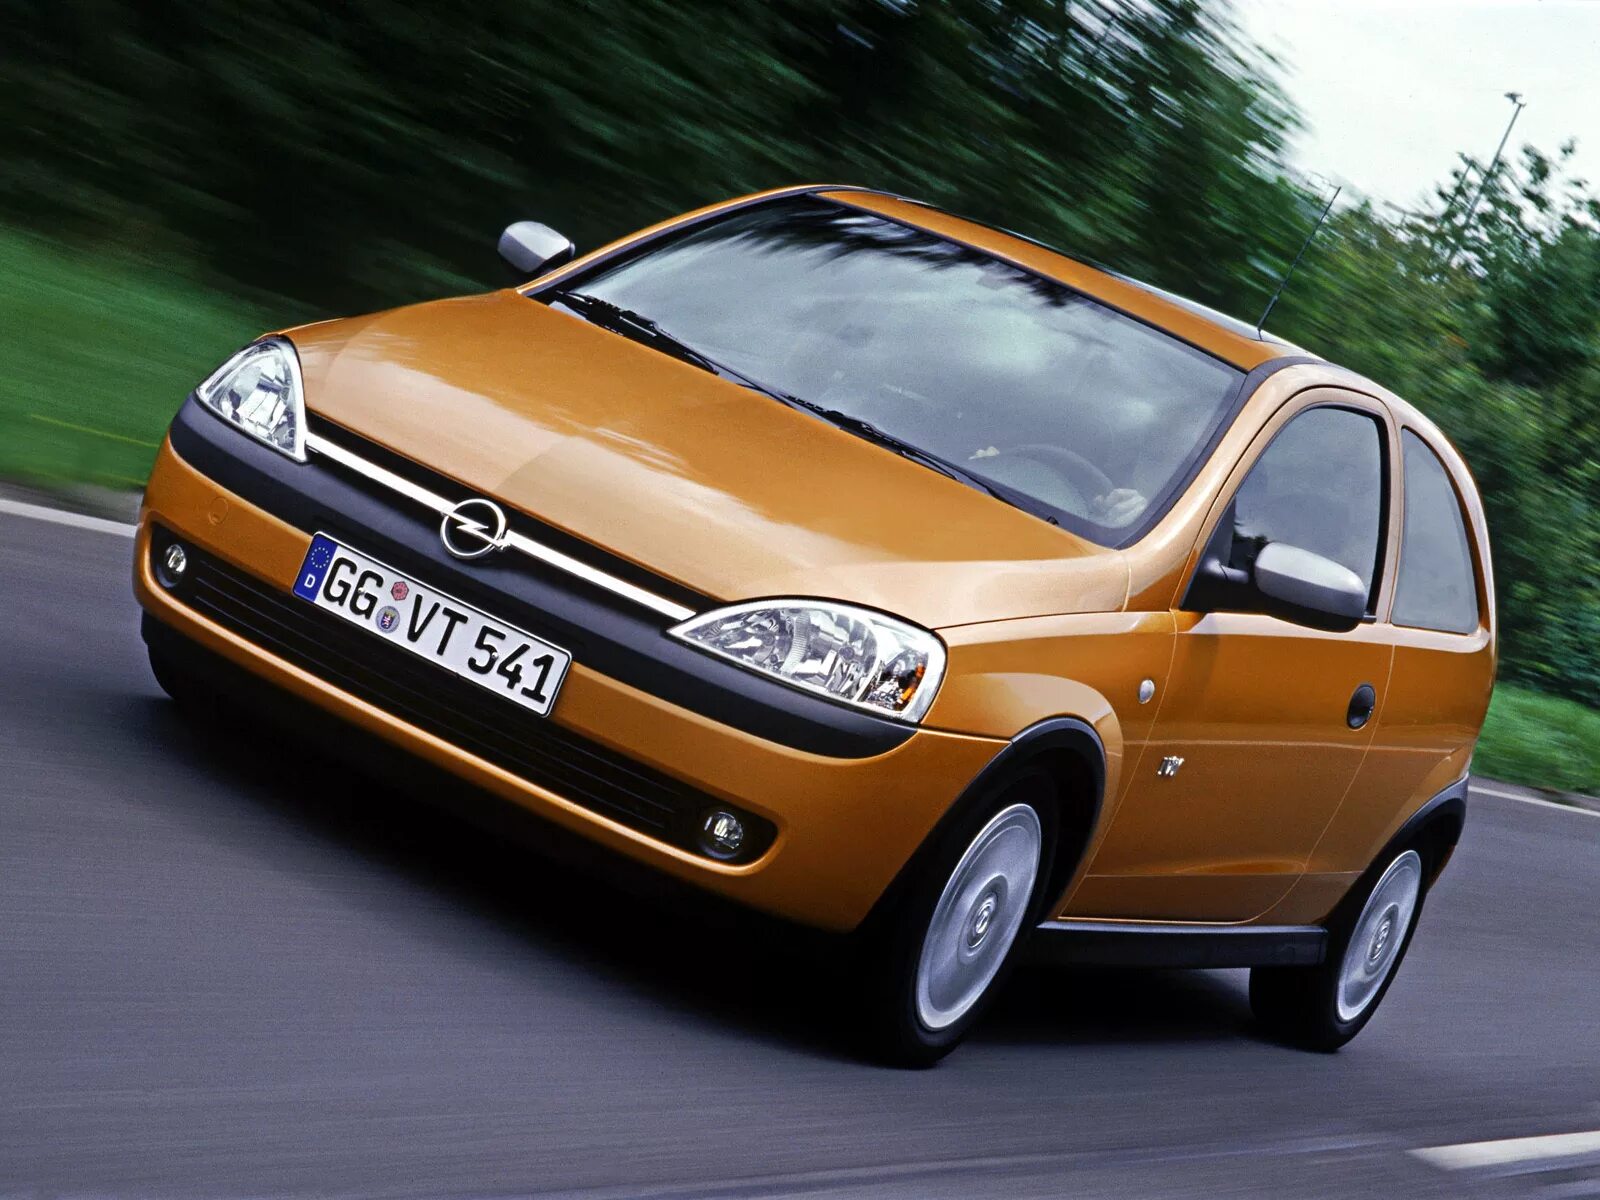 Opel Corsa c 2003. Opel Corsa c 2000. Opel Corsa 2000. Опель Корса 2000-2003. Opel corsa 2003